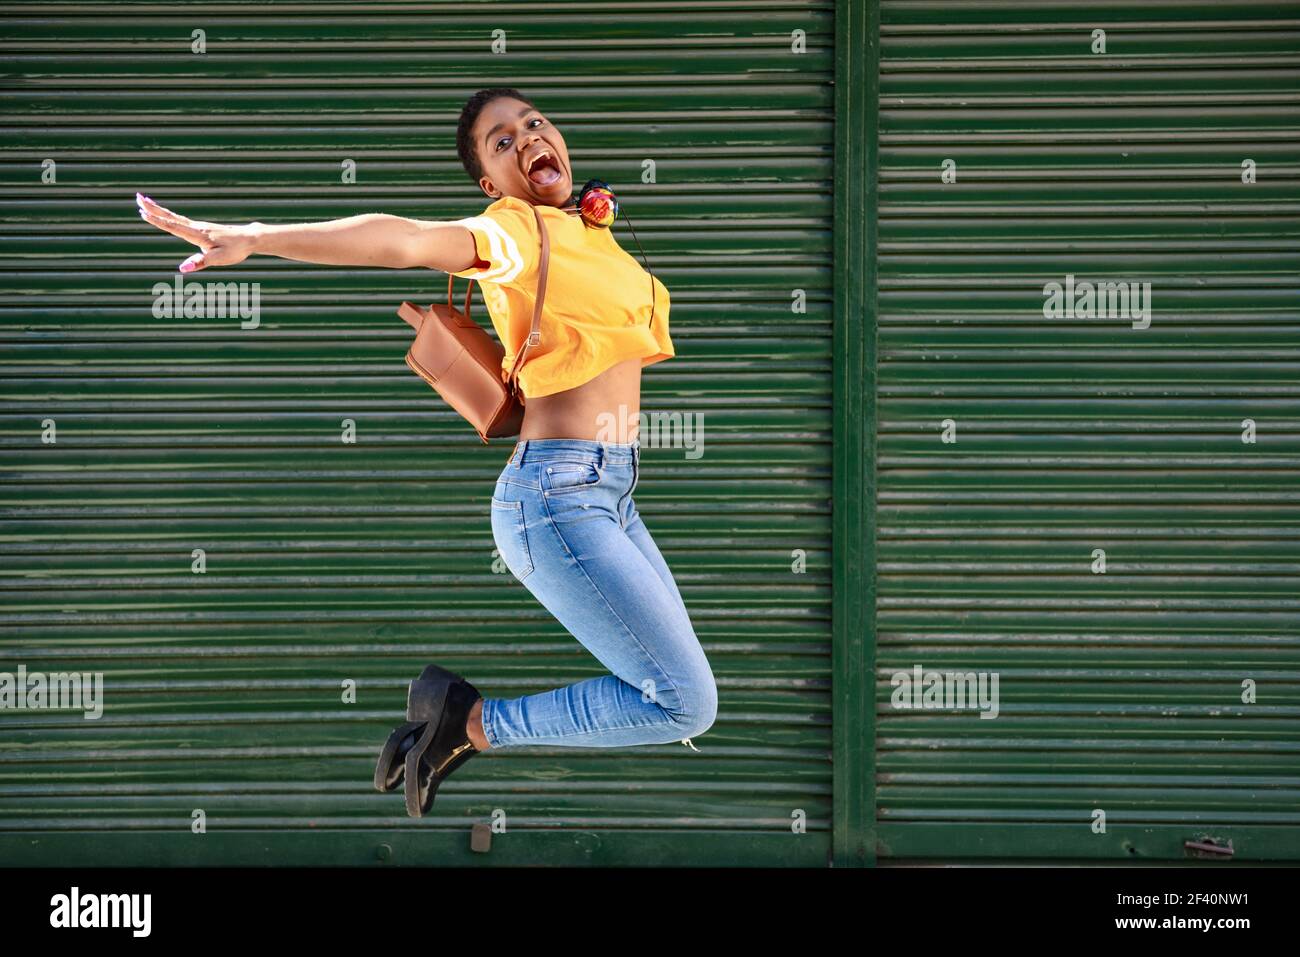 Junge afrikanische Frau springt auf Jalousien Hintergrund. Glückliches Mädchen mit sehr kurzen Haaren tragen lässige Kleidung.. Junge schwarze Frau springt auf Jalousien Hintergrund. Stockfoto